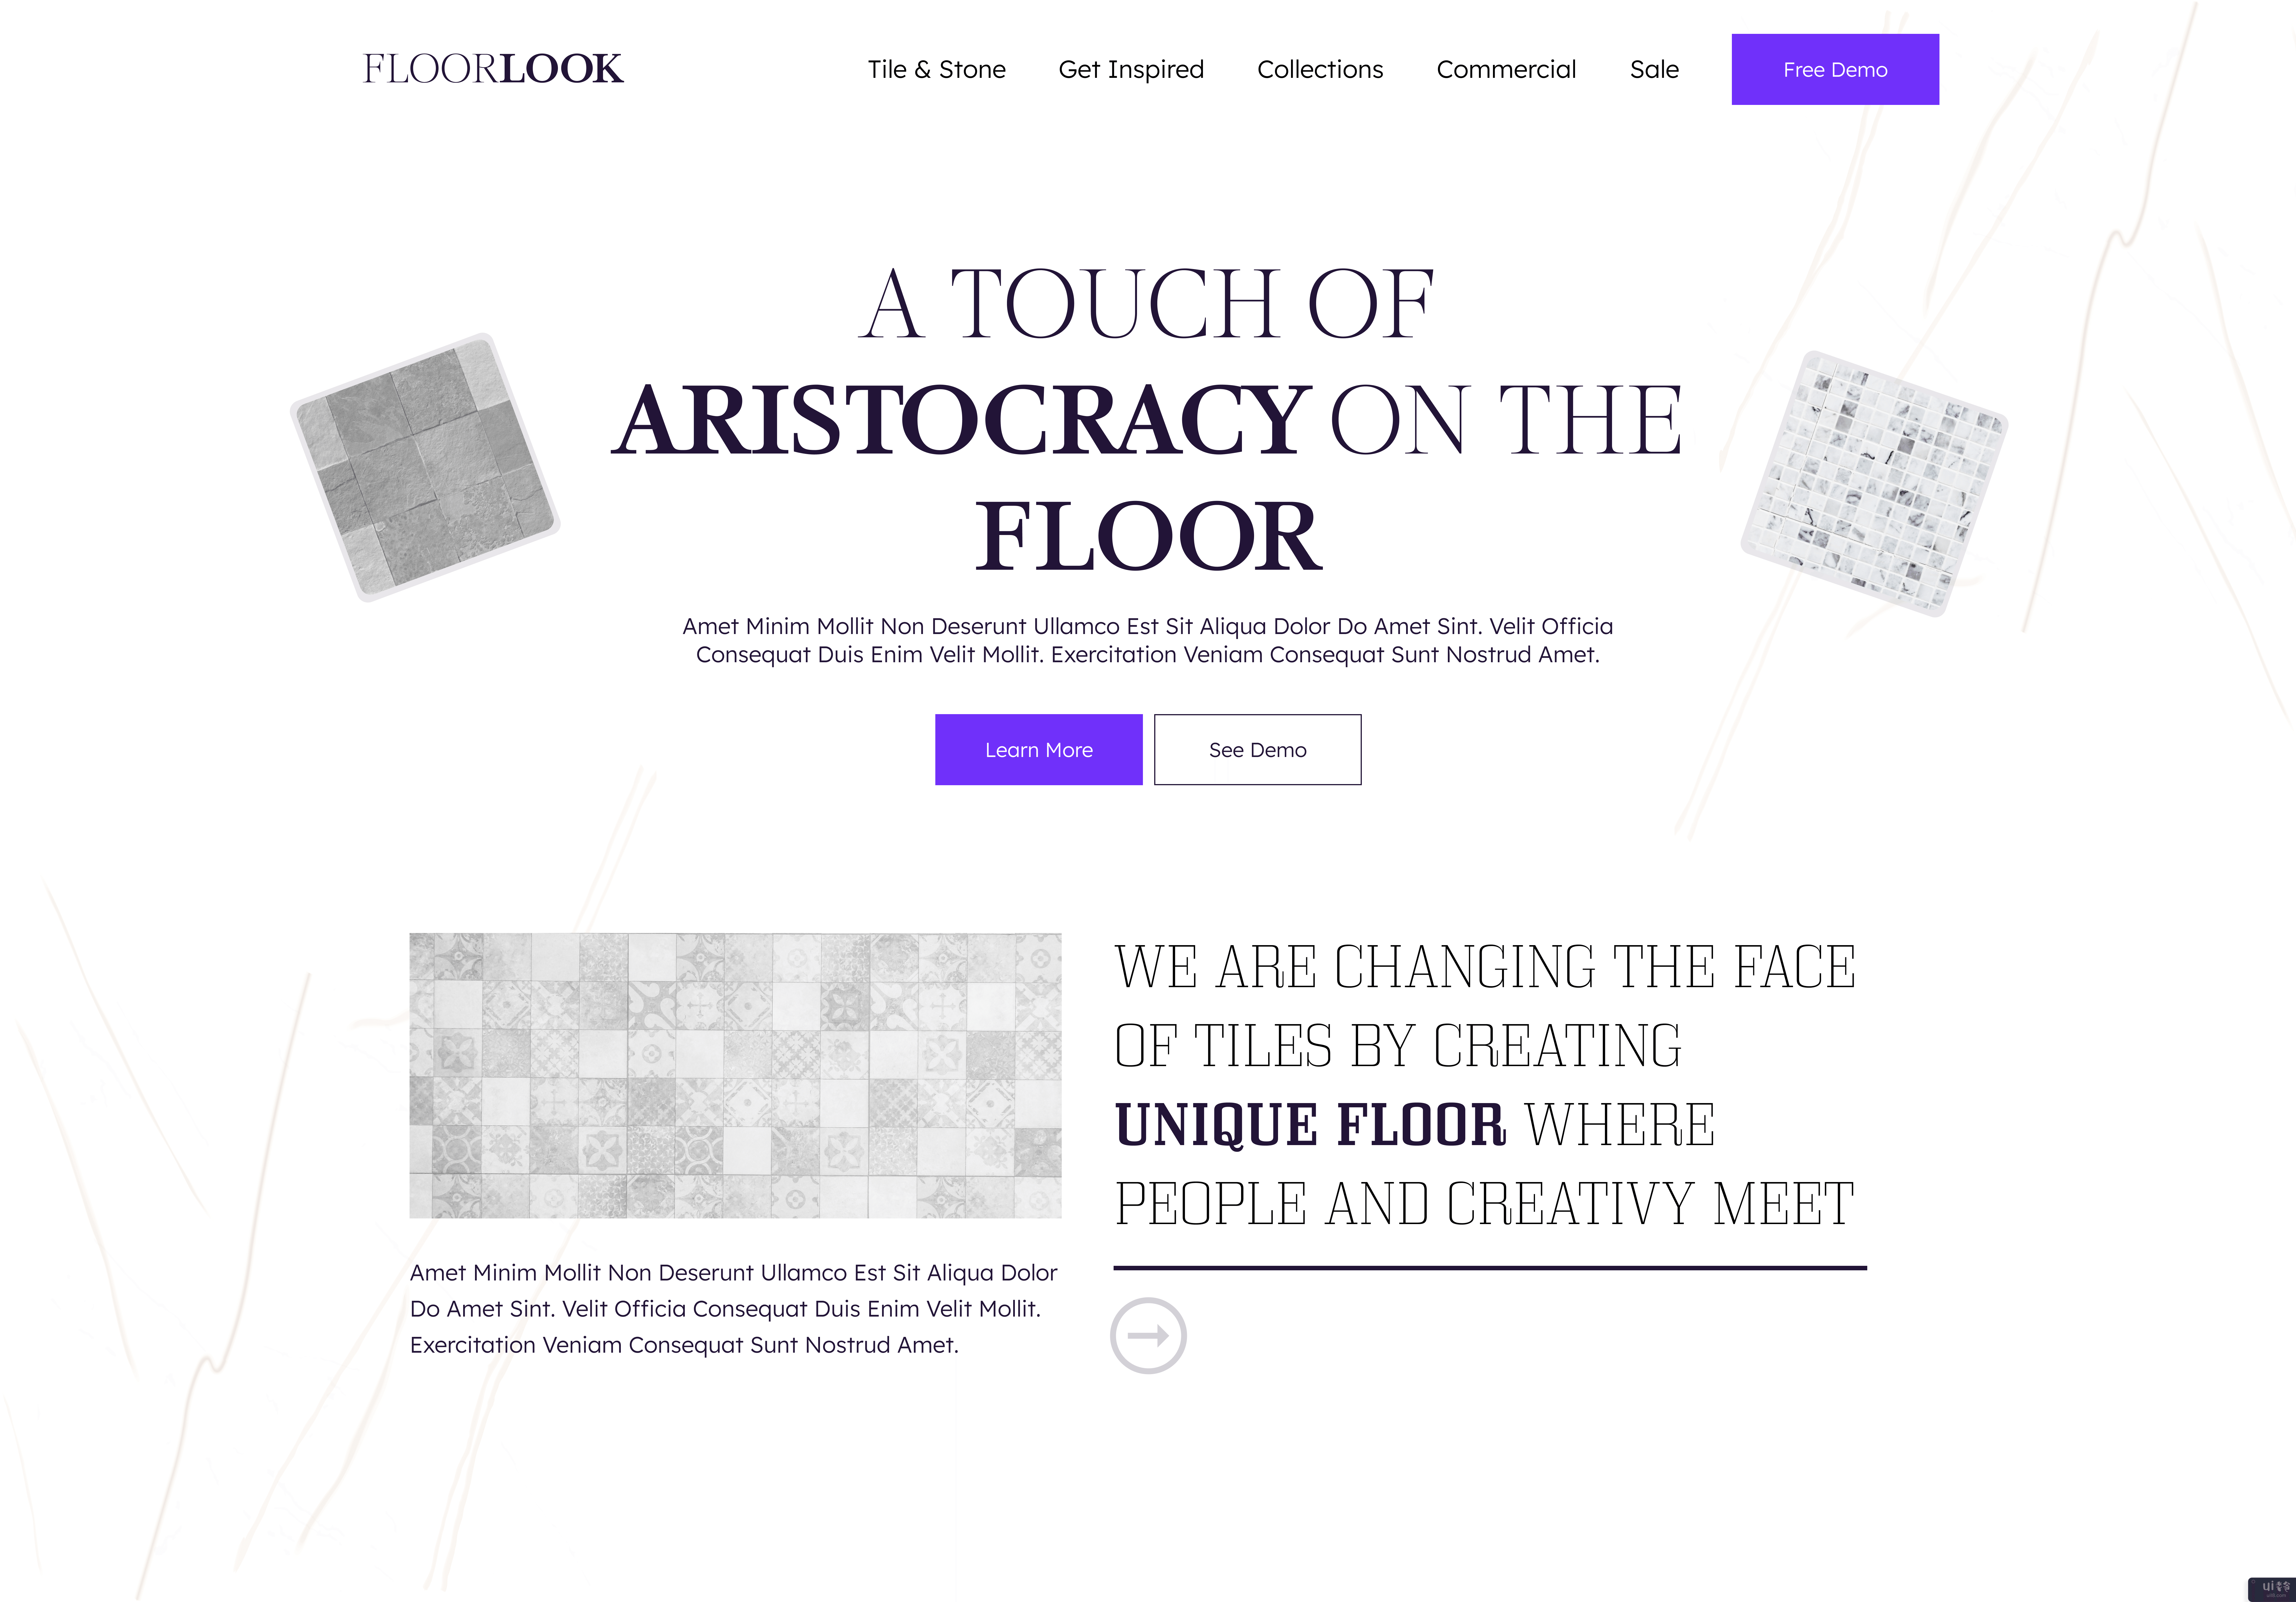 地板外观 |网站英雄形象(Floor Look | Website Hero Image)插图